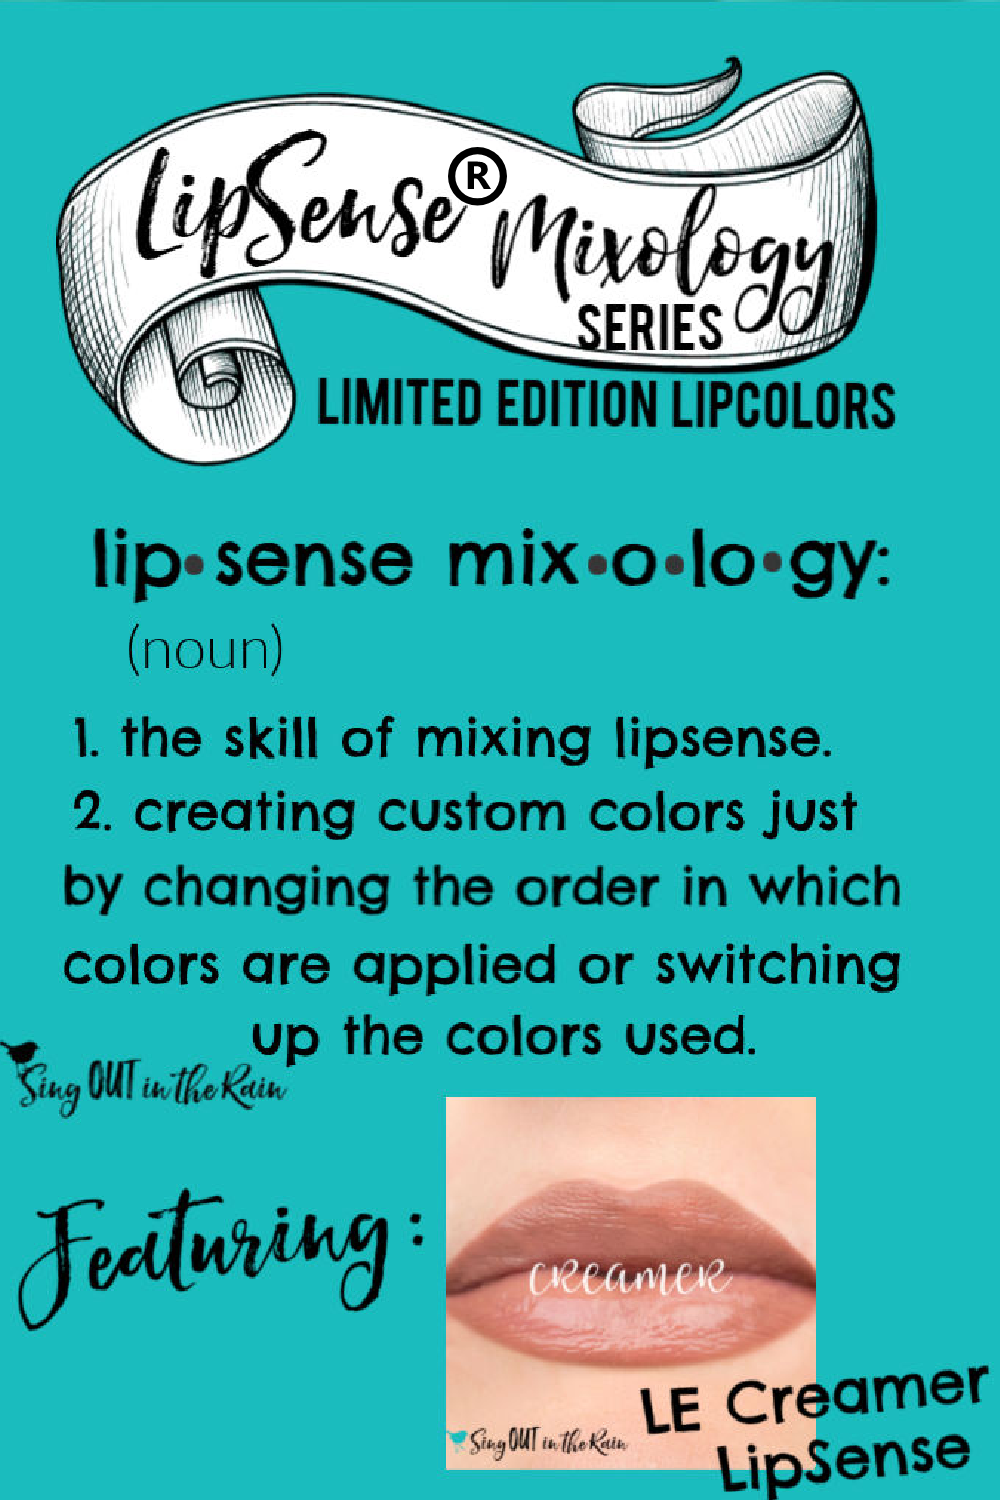 The Ultimate Guide to Creamer LipSense